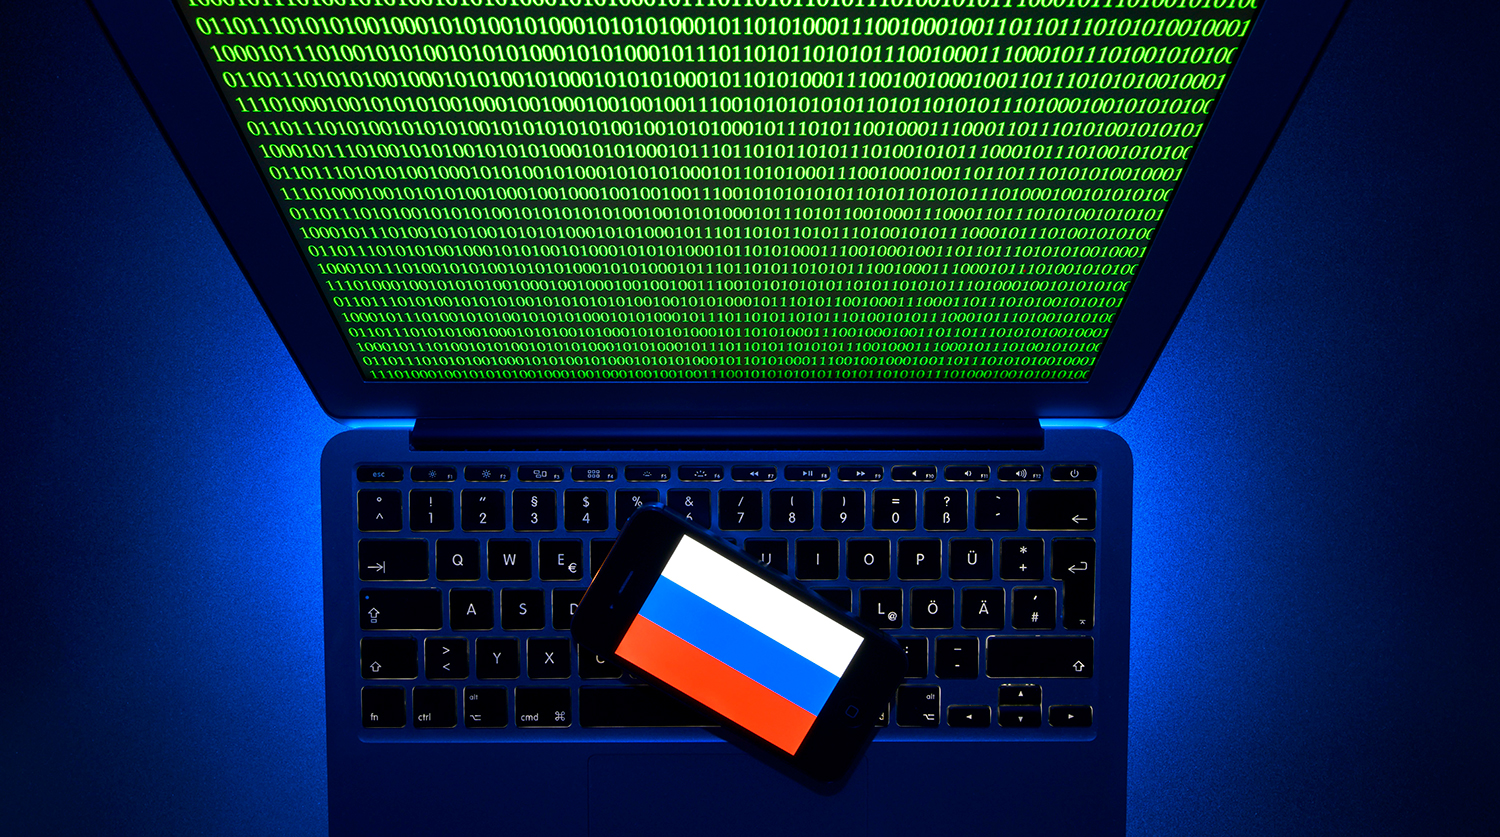 Назван план на случай внешней угрозы Рунету